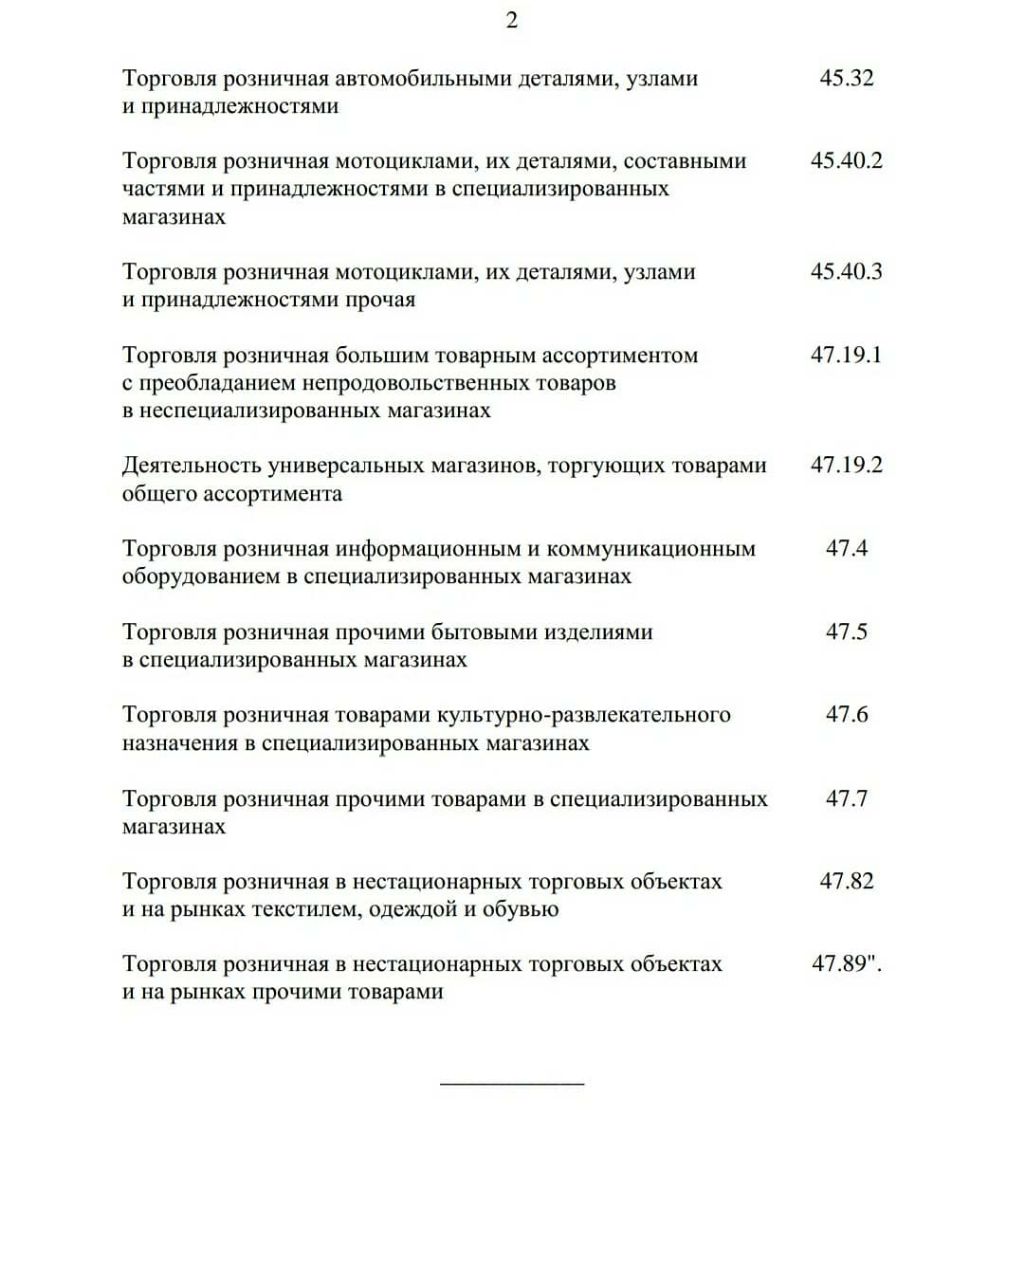 Список отраслей пострадавших от коронавируса правительство РФ